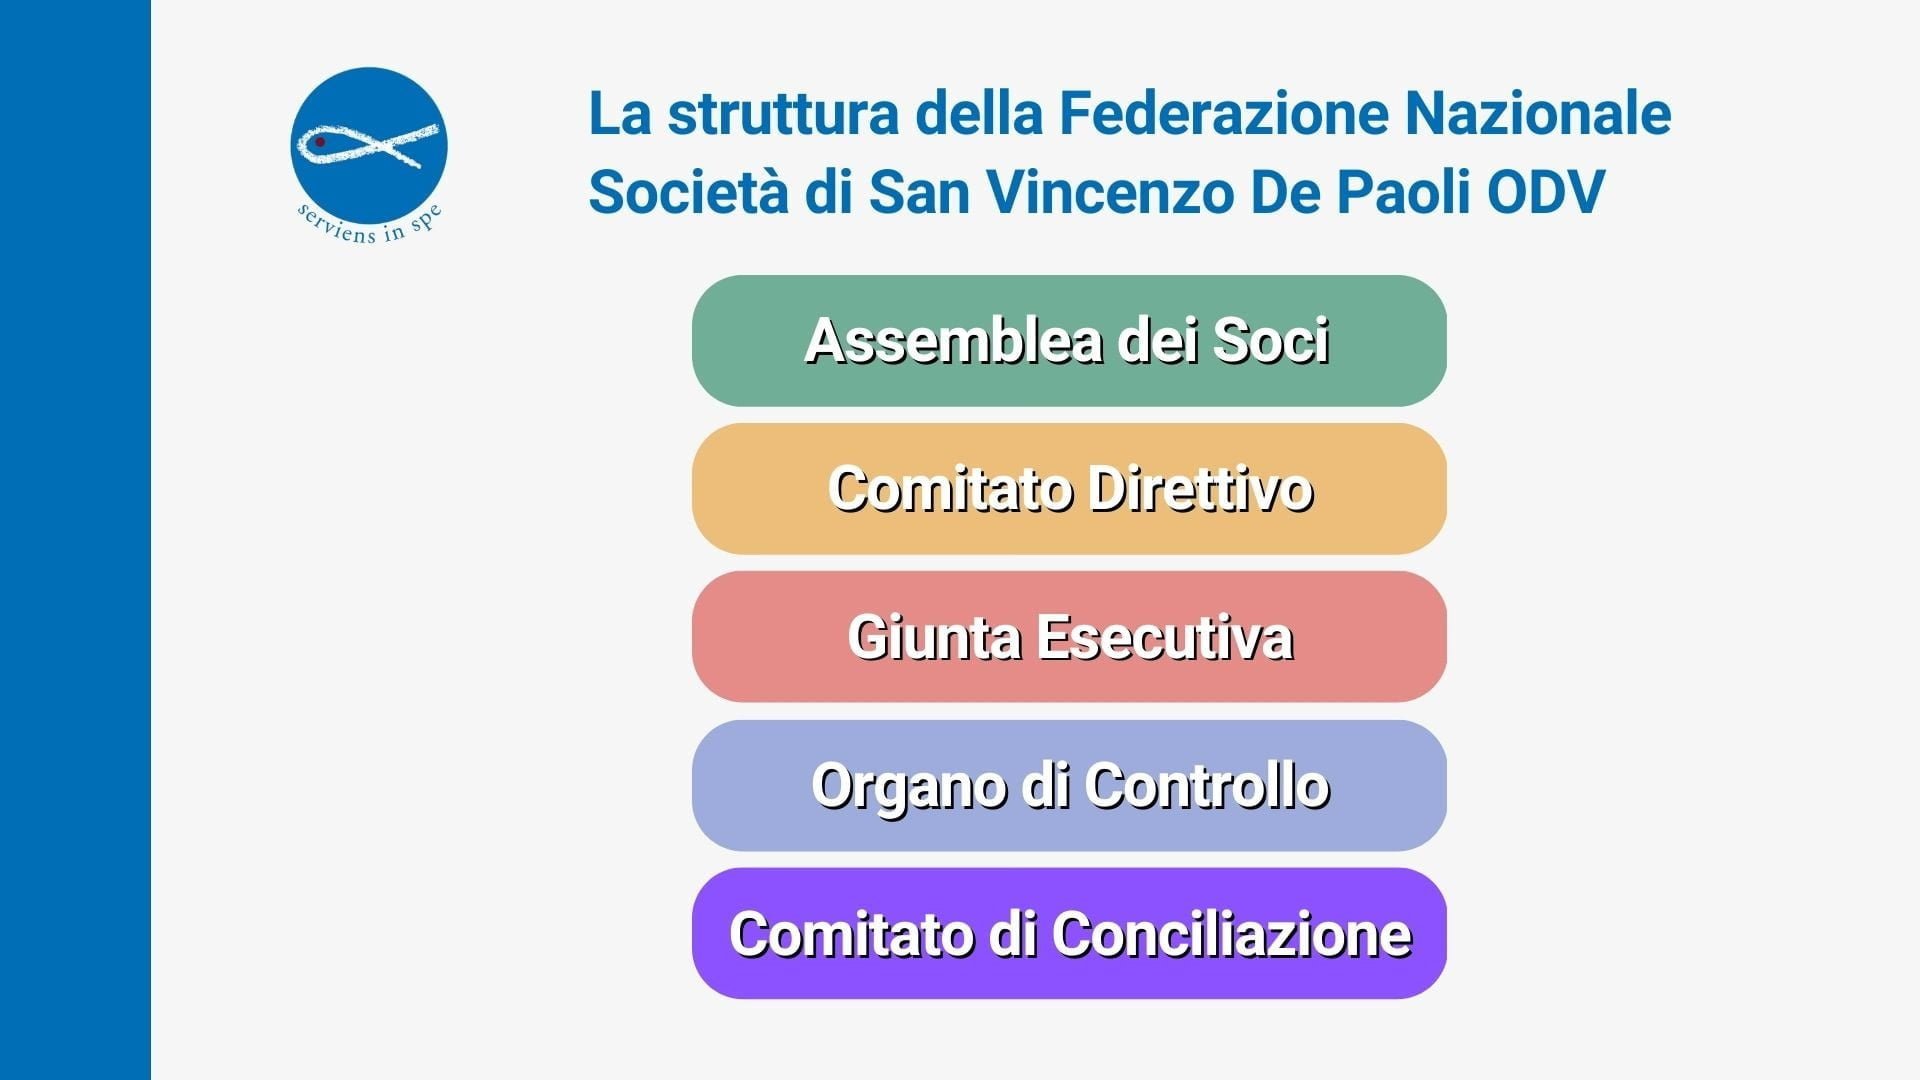 La struttura della Società di San Vincenzo De Paoli